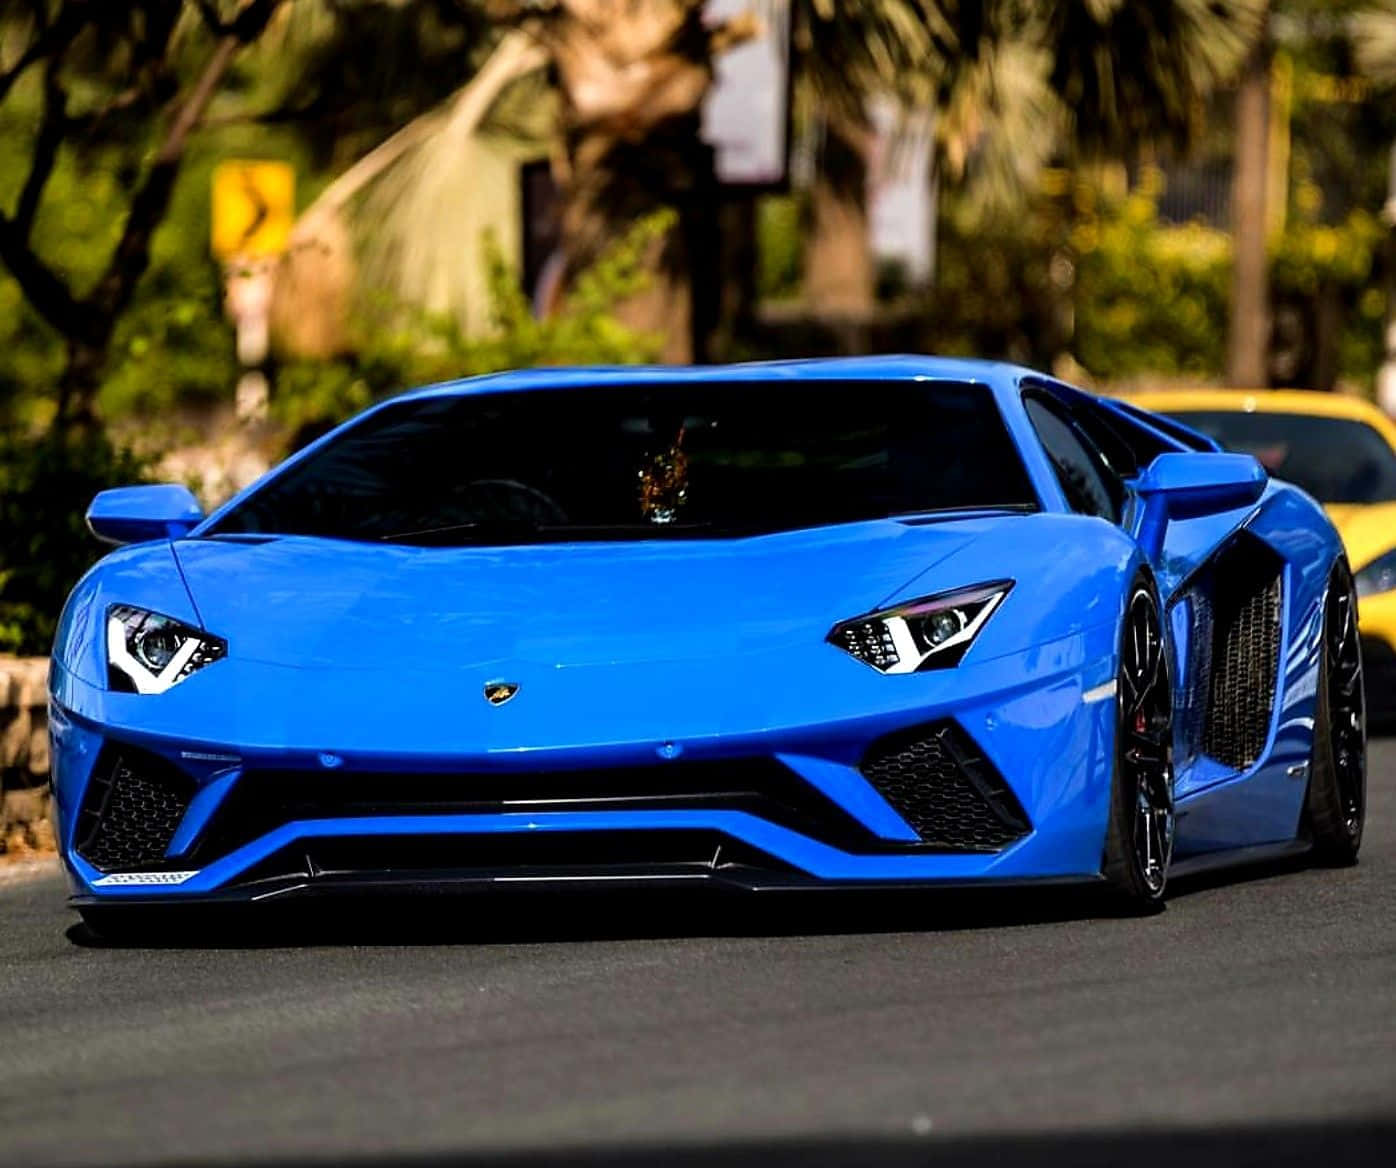 A Blue Sports Car Driving Down A Street